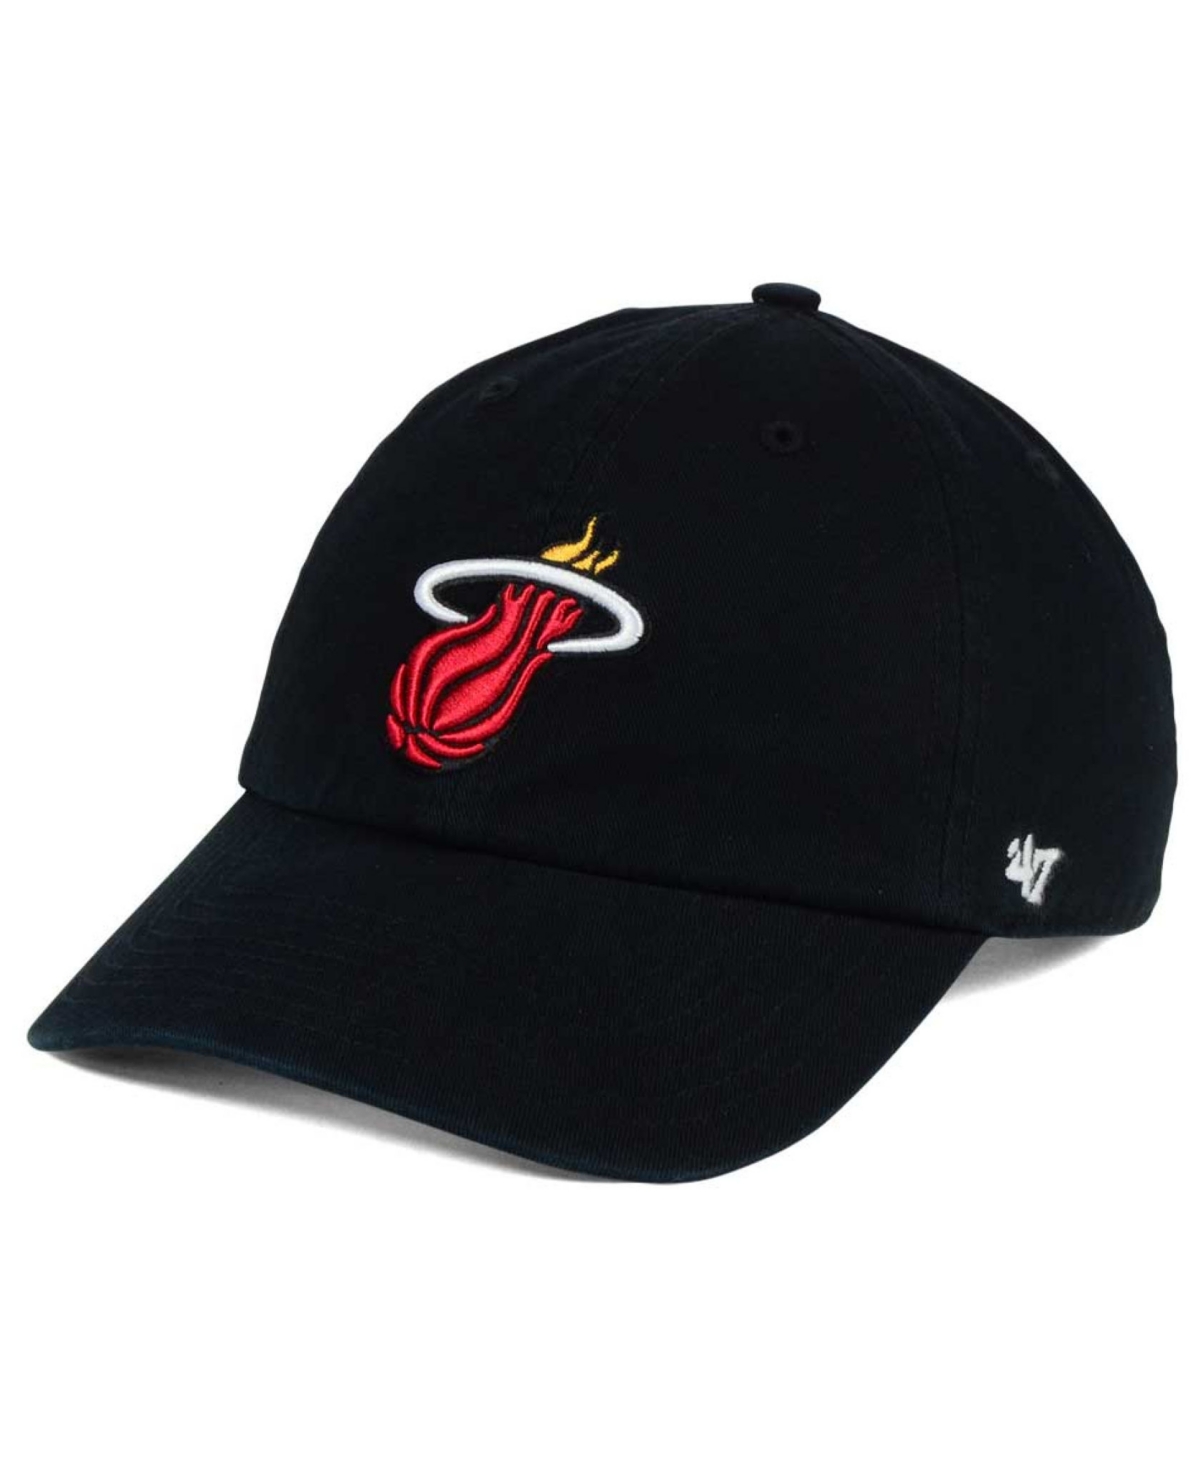 Miami Heat Clean Up Cap - Black